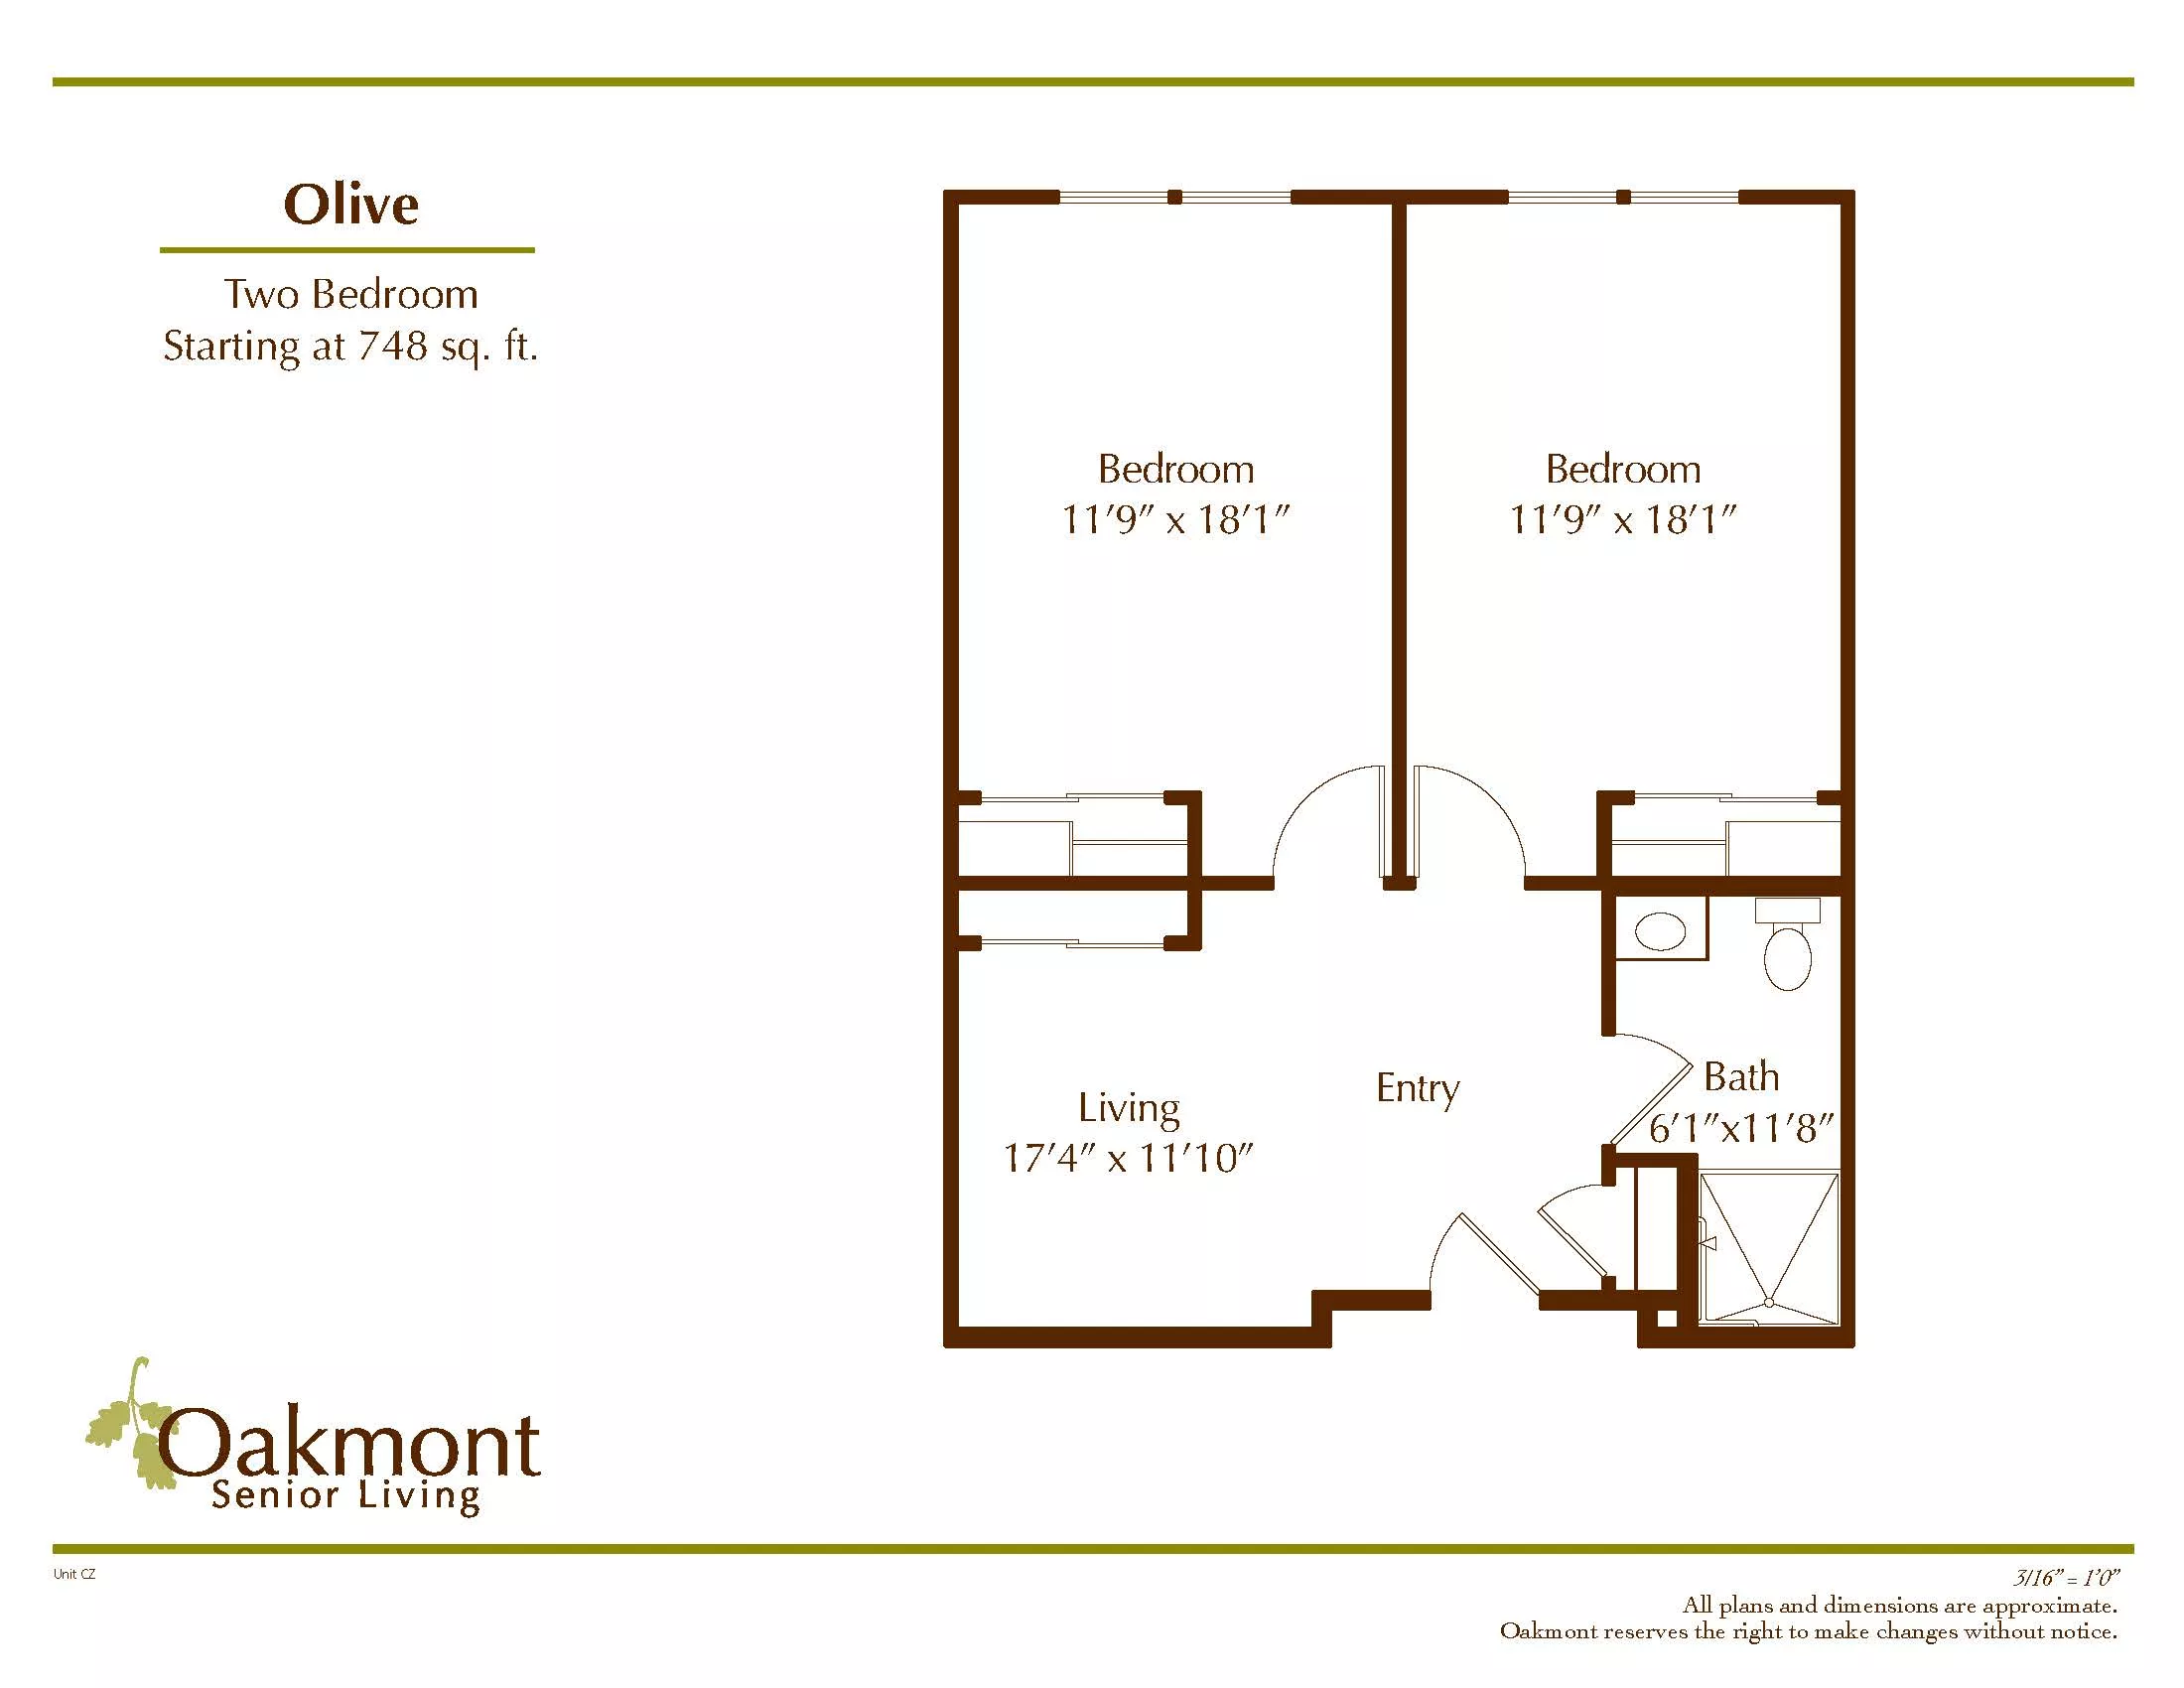 Olive floor plan